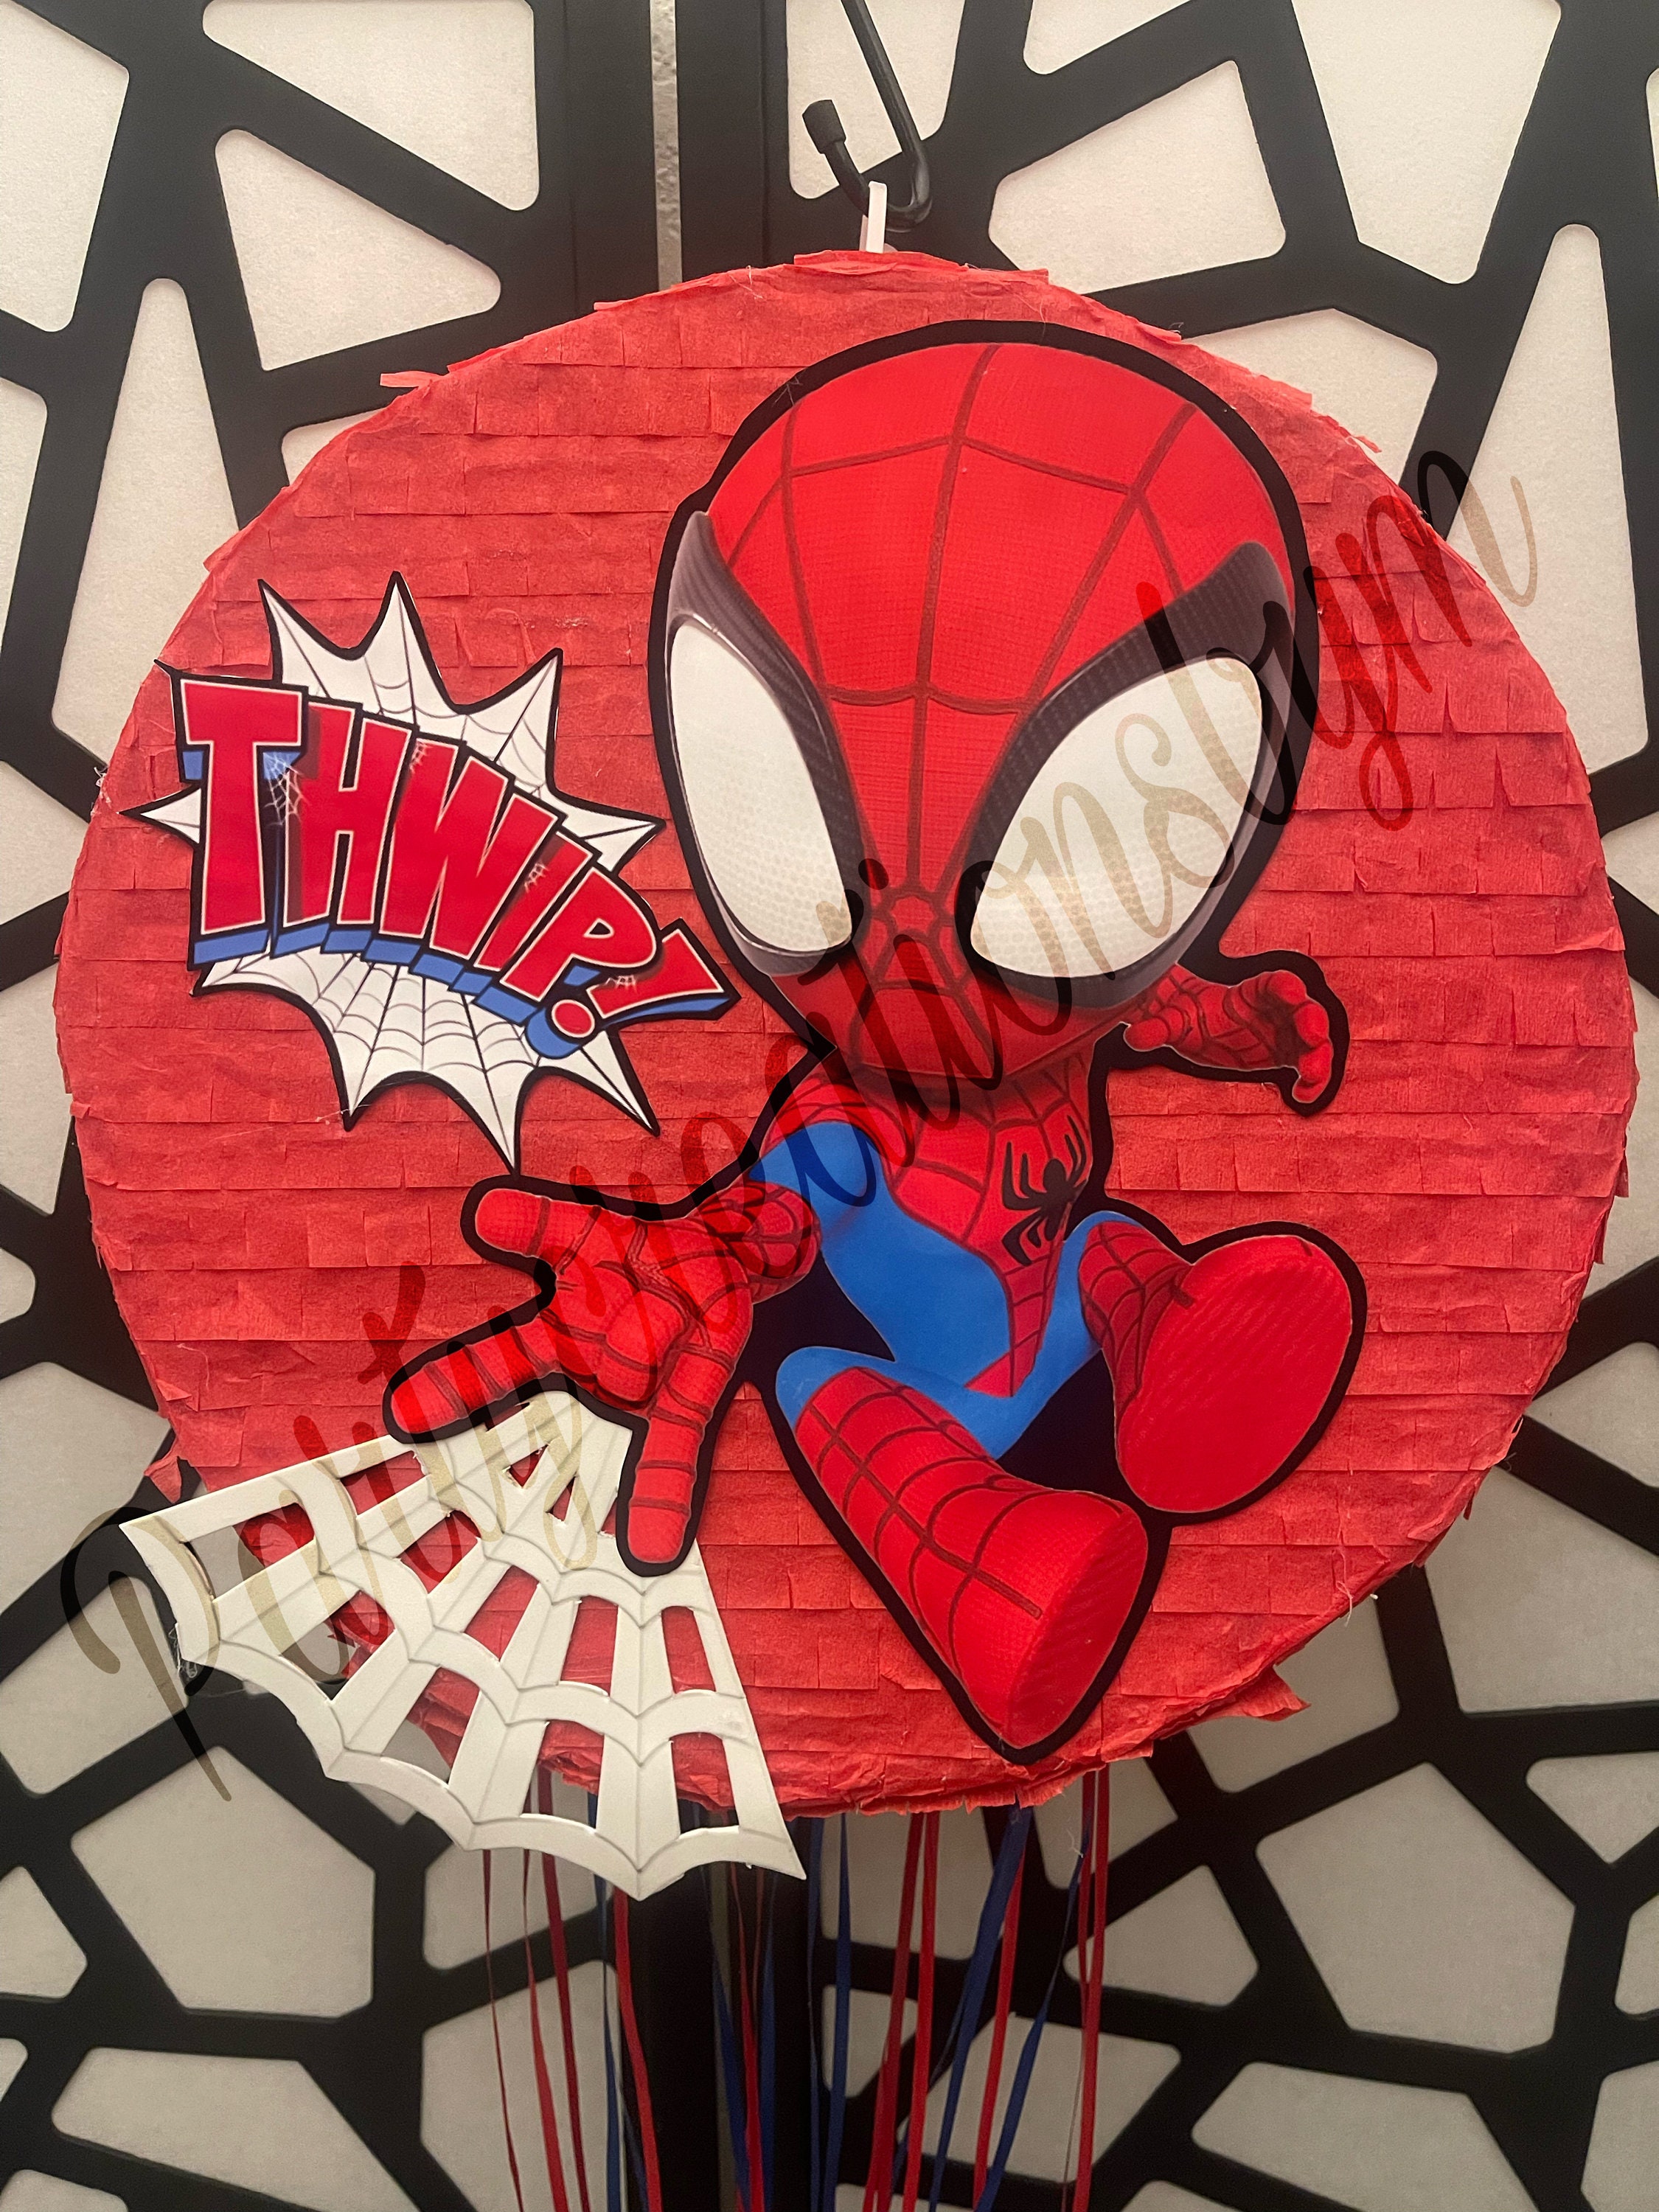 Mini Piñata Spiderman